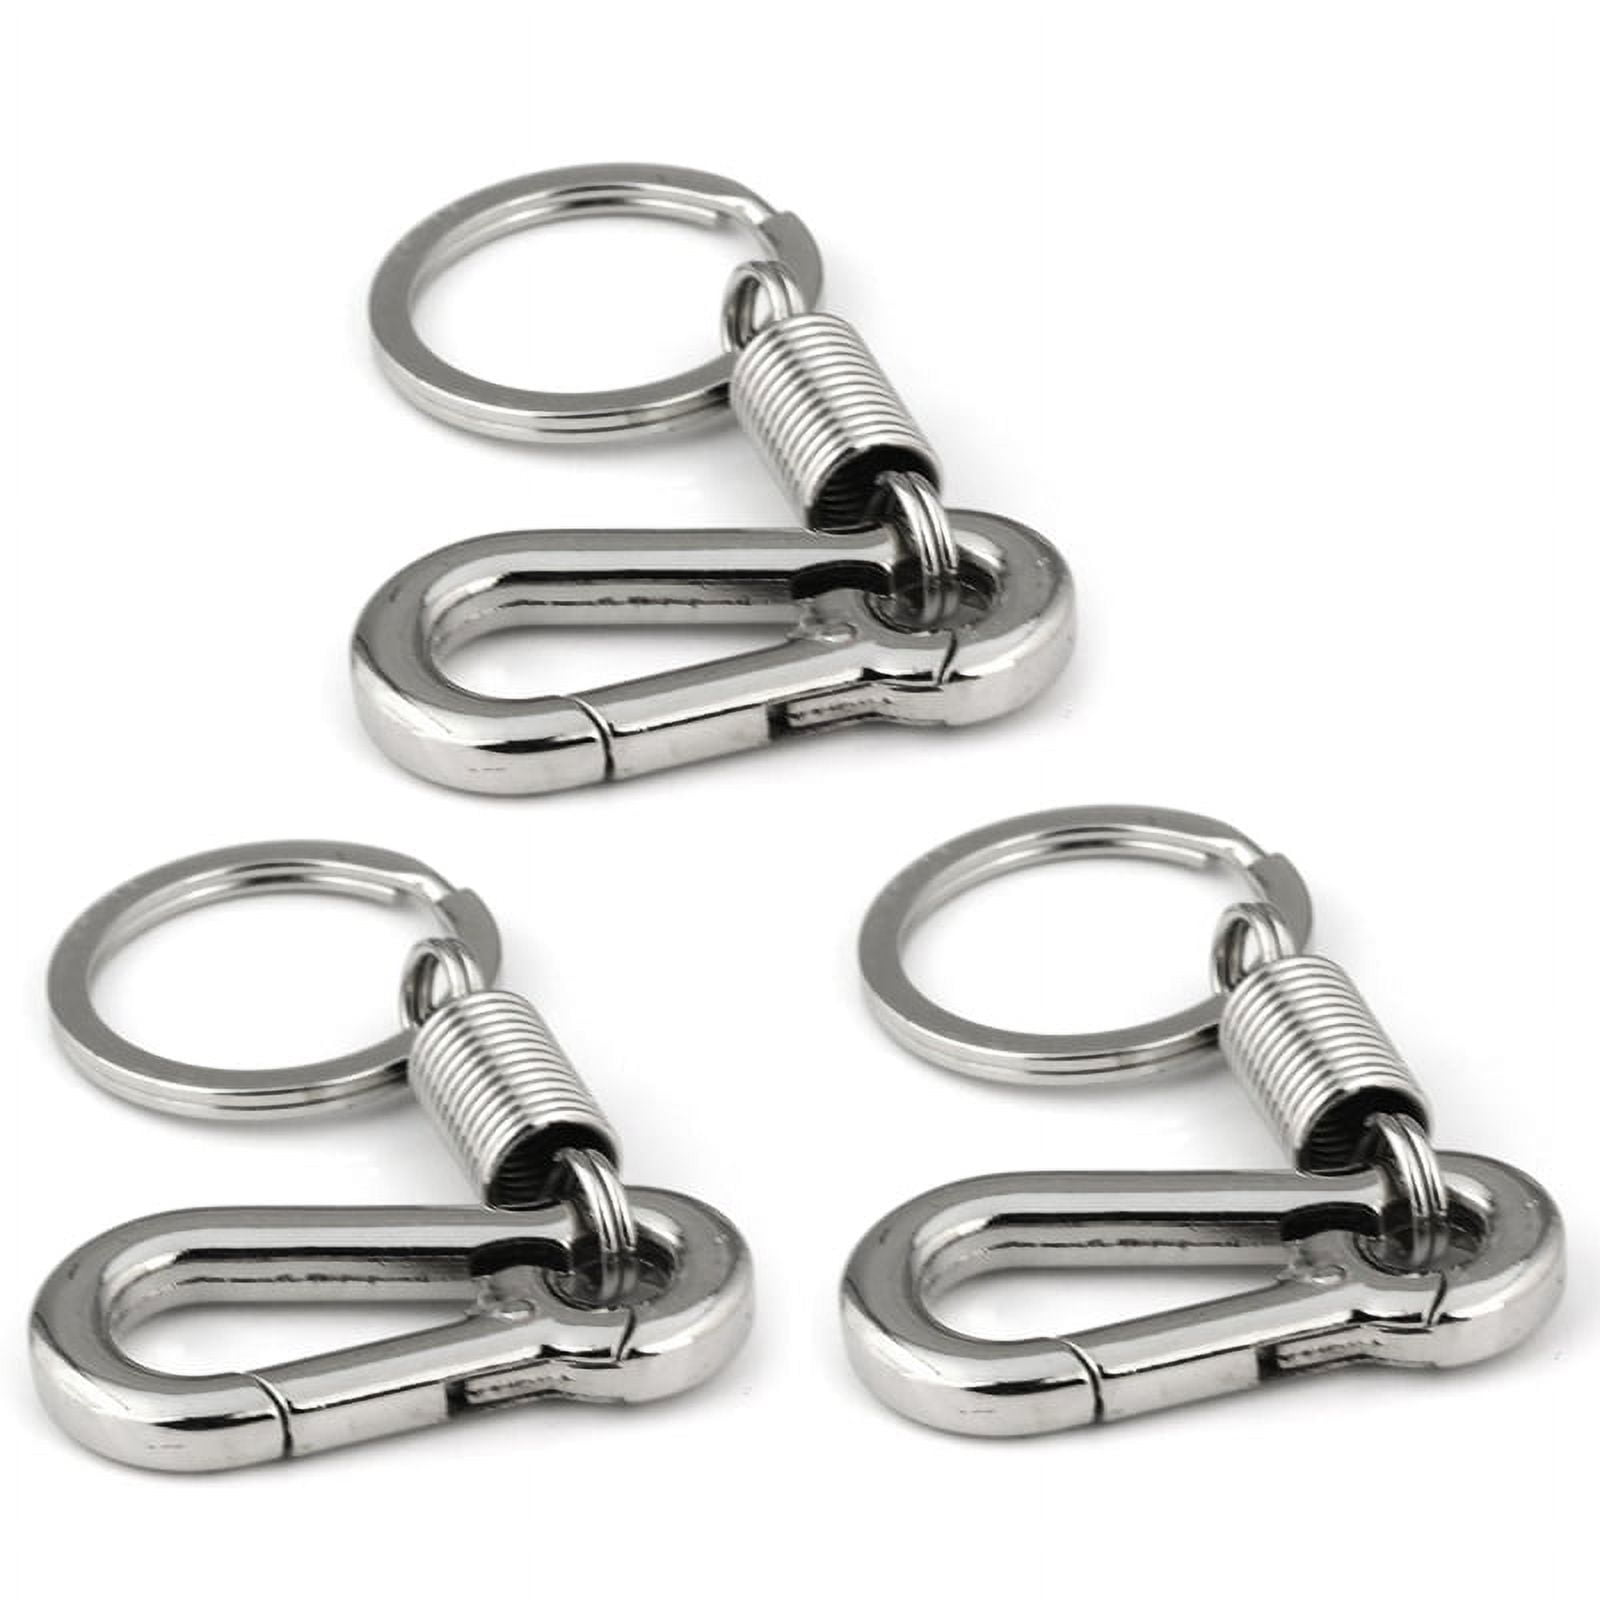 MI-YUKI Stainless Steel Spring Key Chain Carabiner Climbing Belt